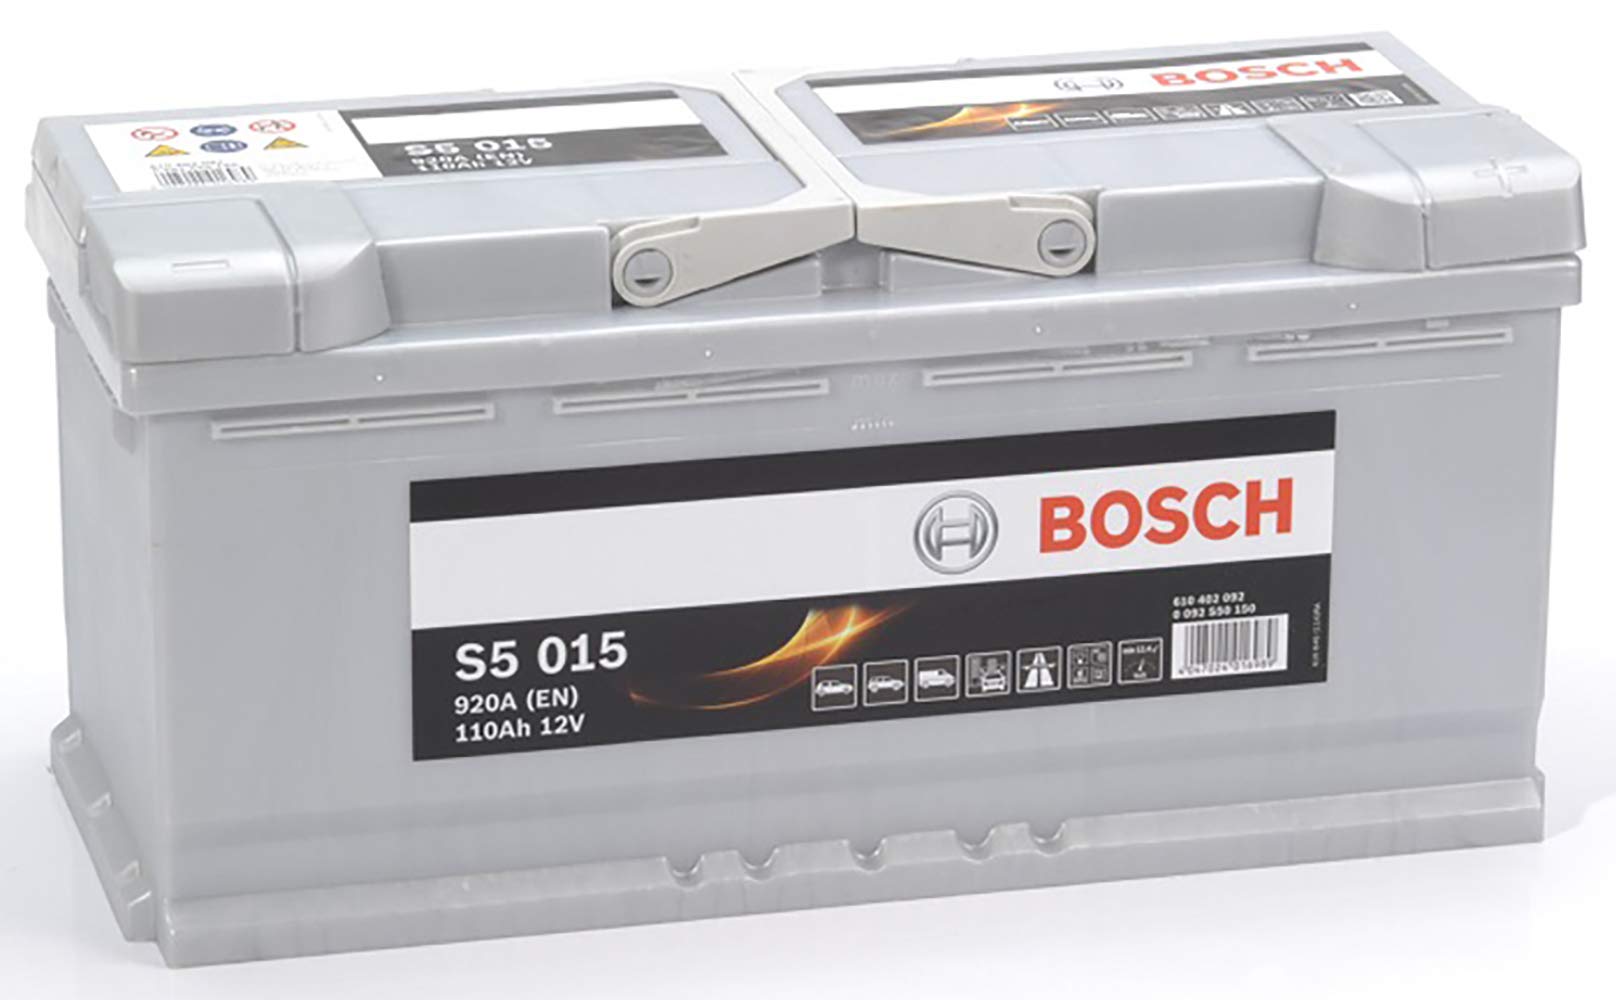 Bosch S5015 - Autobatterie - 110A/h - 920A - Blei-Säure-Technologie - für Fahrzeuge ohne Start-Stopp-System von Bosch Automotive